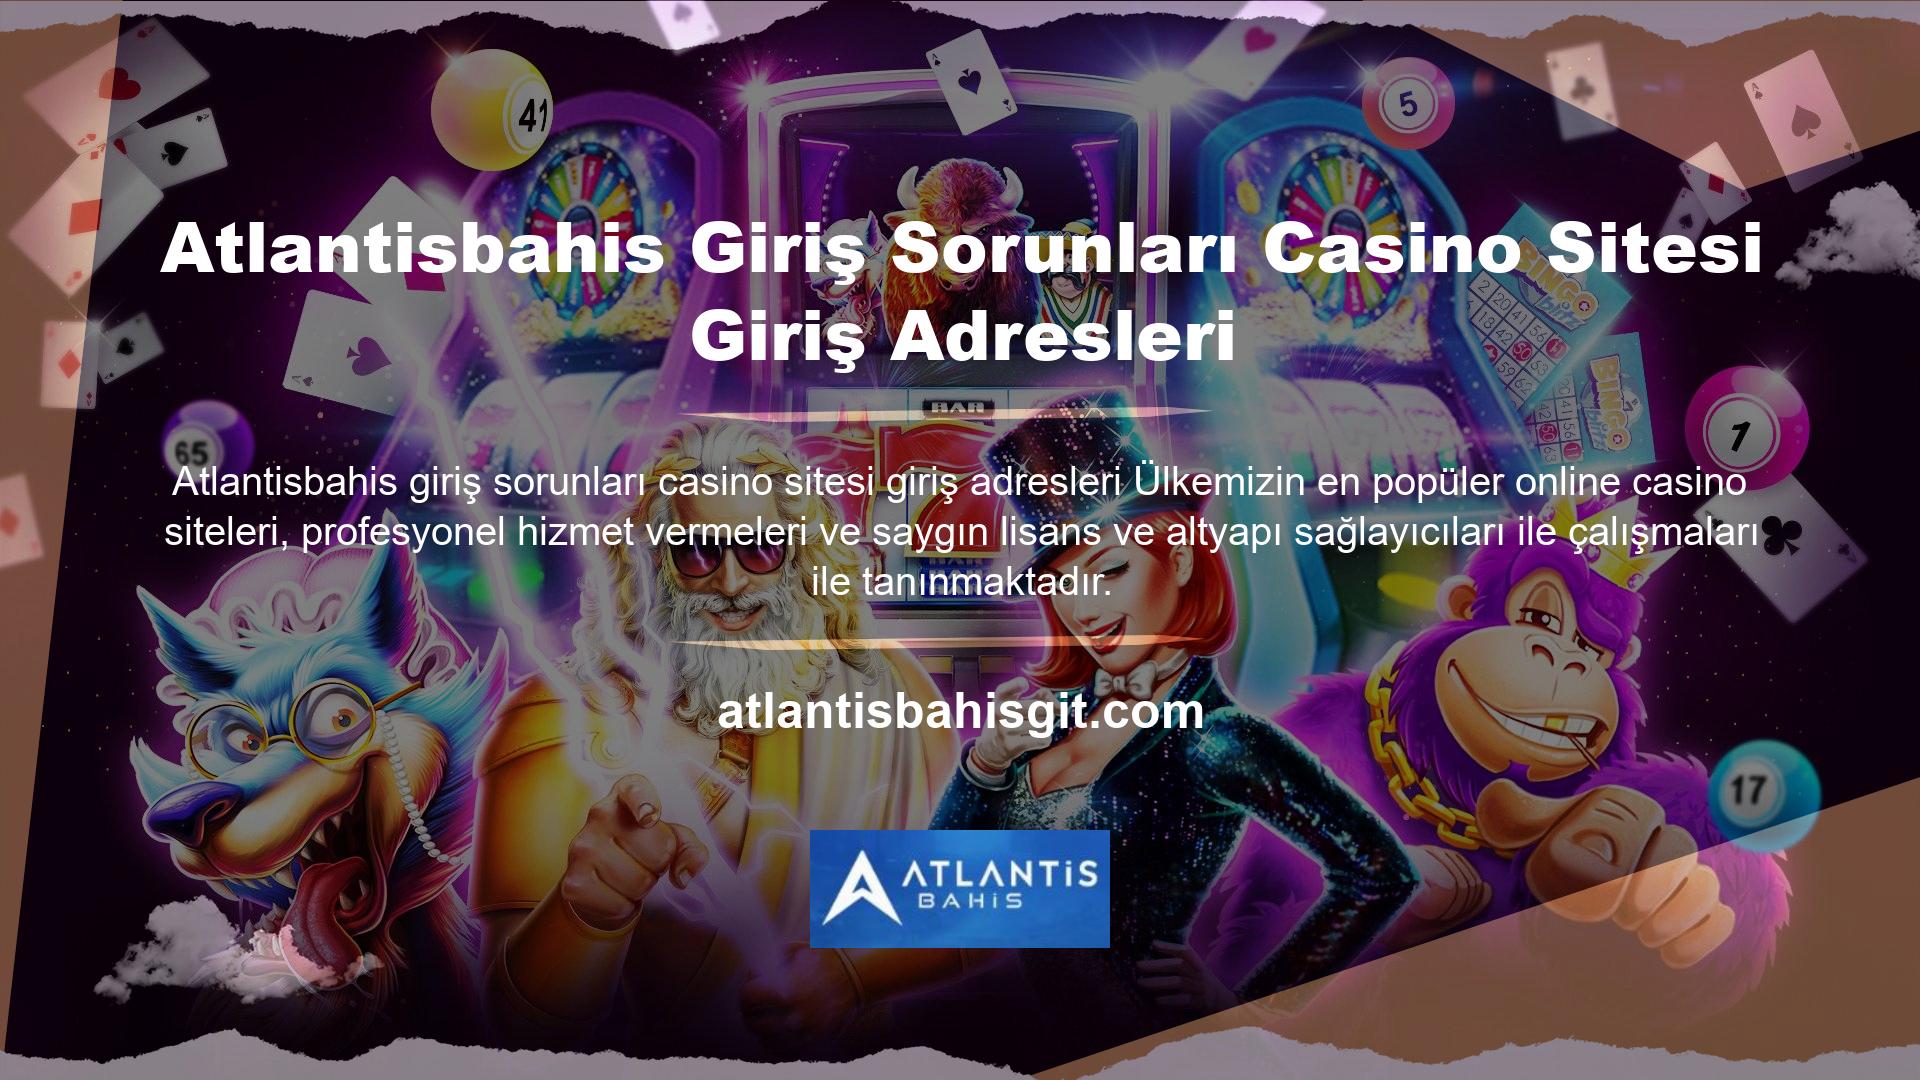 Atlantisbahis Giriş Sorunları Casino Sitesi Giriş Adresleri